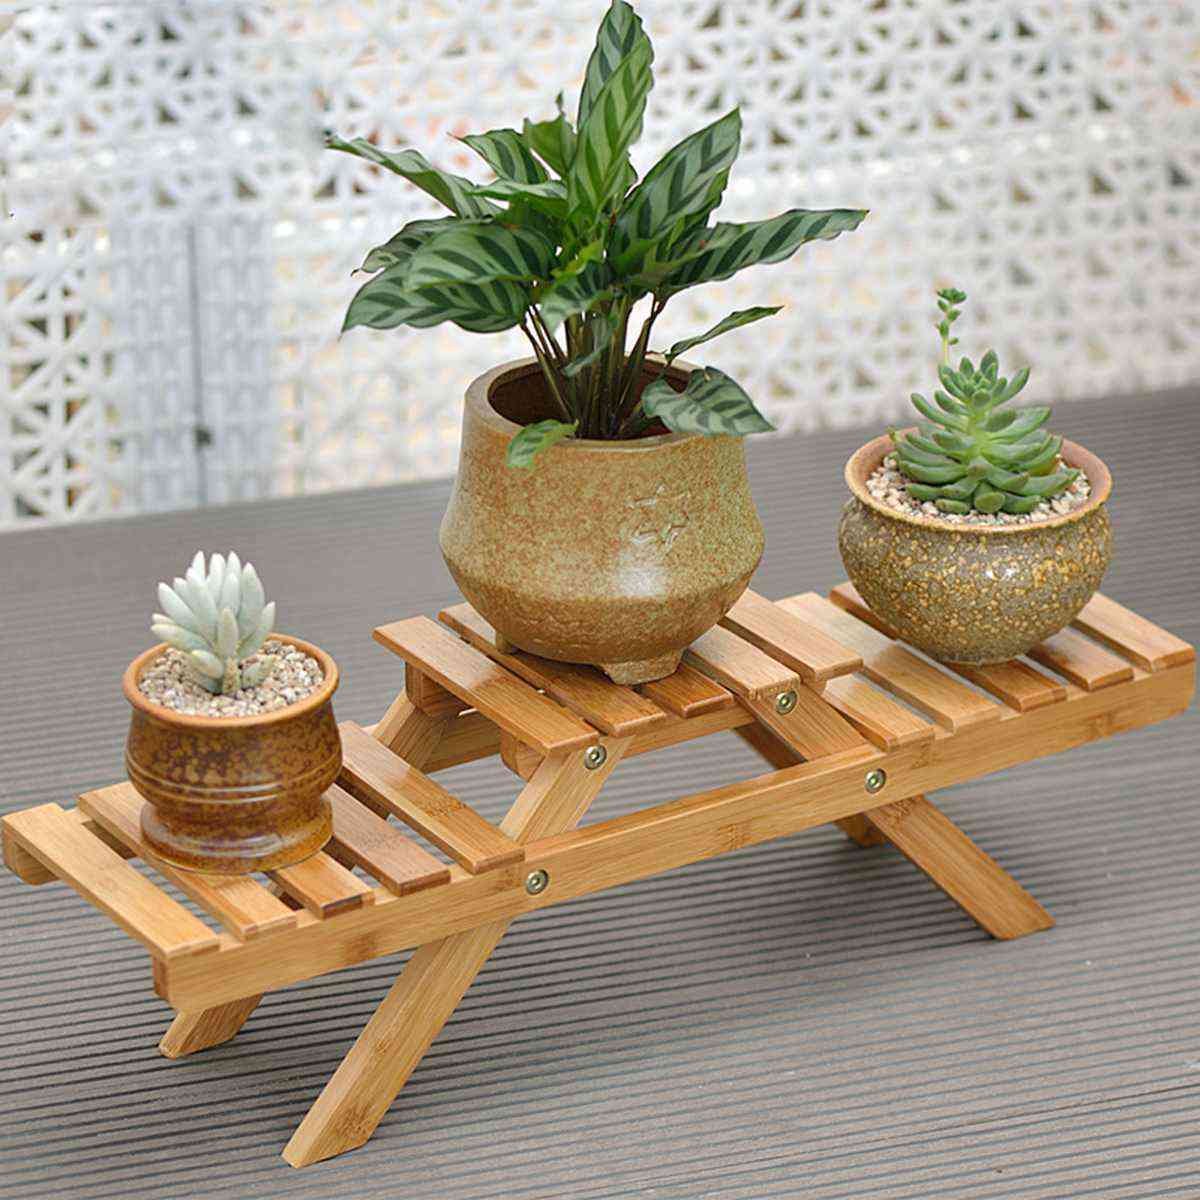 Bloemenstandaard rek houten plank palnt pannenlap hoek tuin binnen / buiten